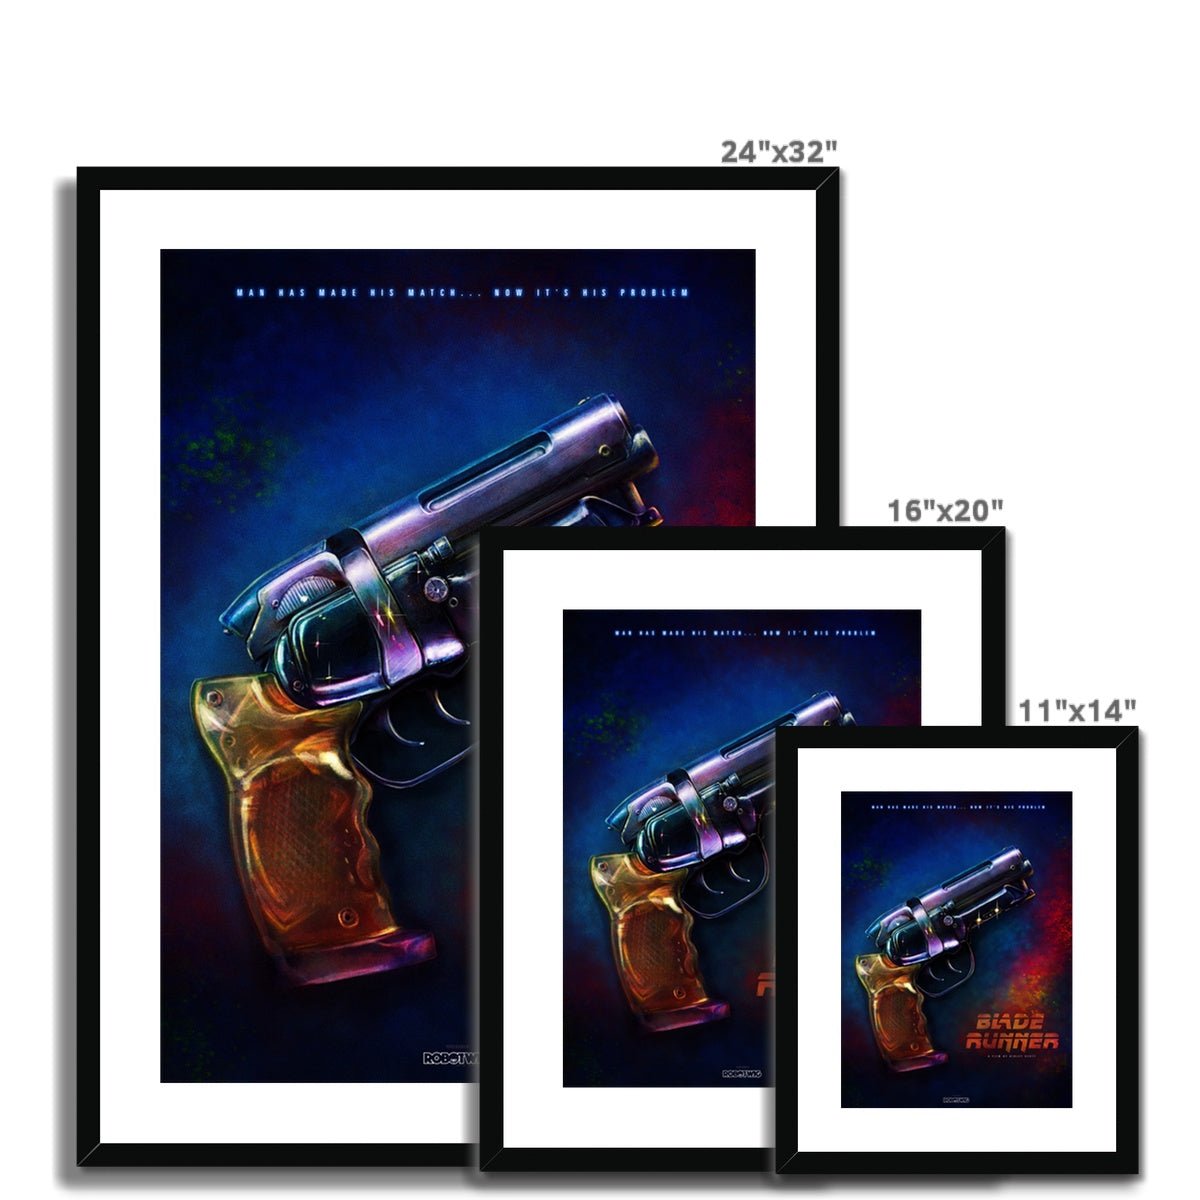 Bladerunner Alternate Movie Poster Art Framed & Mounted Print